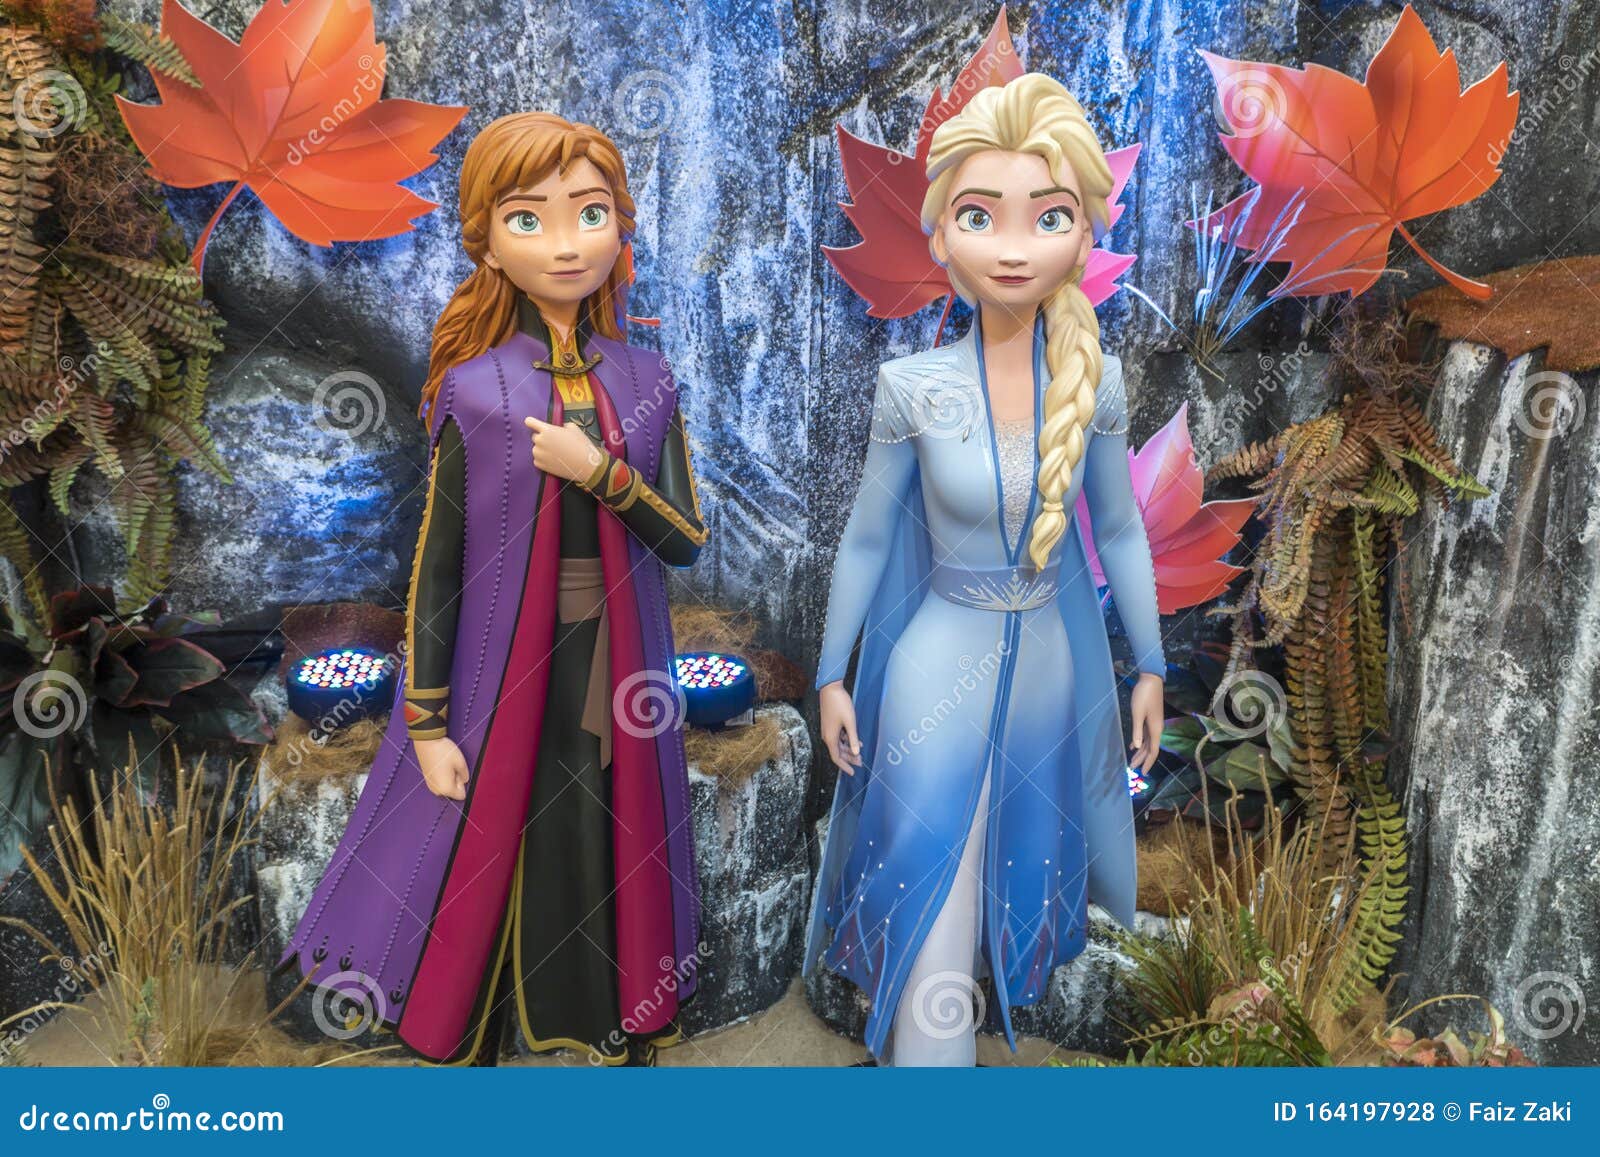 Princess Elsa En Anna Van Frozen 2 Magical Journey Dit Evenement is Een Voor Een Nieuwe Disney Blockbuster-film Redactionele Stock Foto - Image of meisje, chris: 164197928